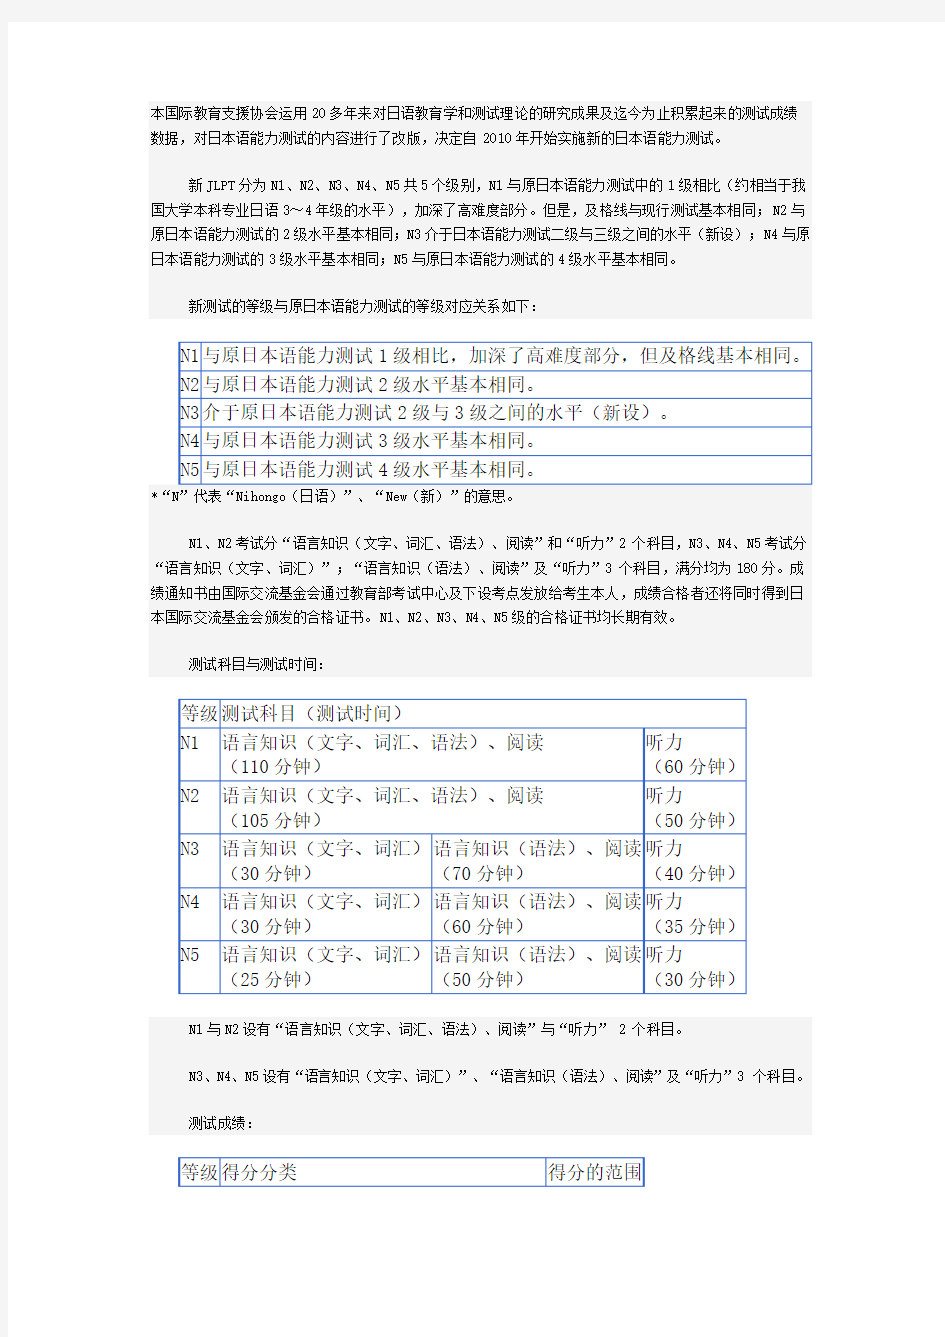 新“JLPT(日本语能力测试)”考试介绍